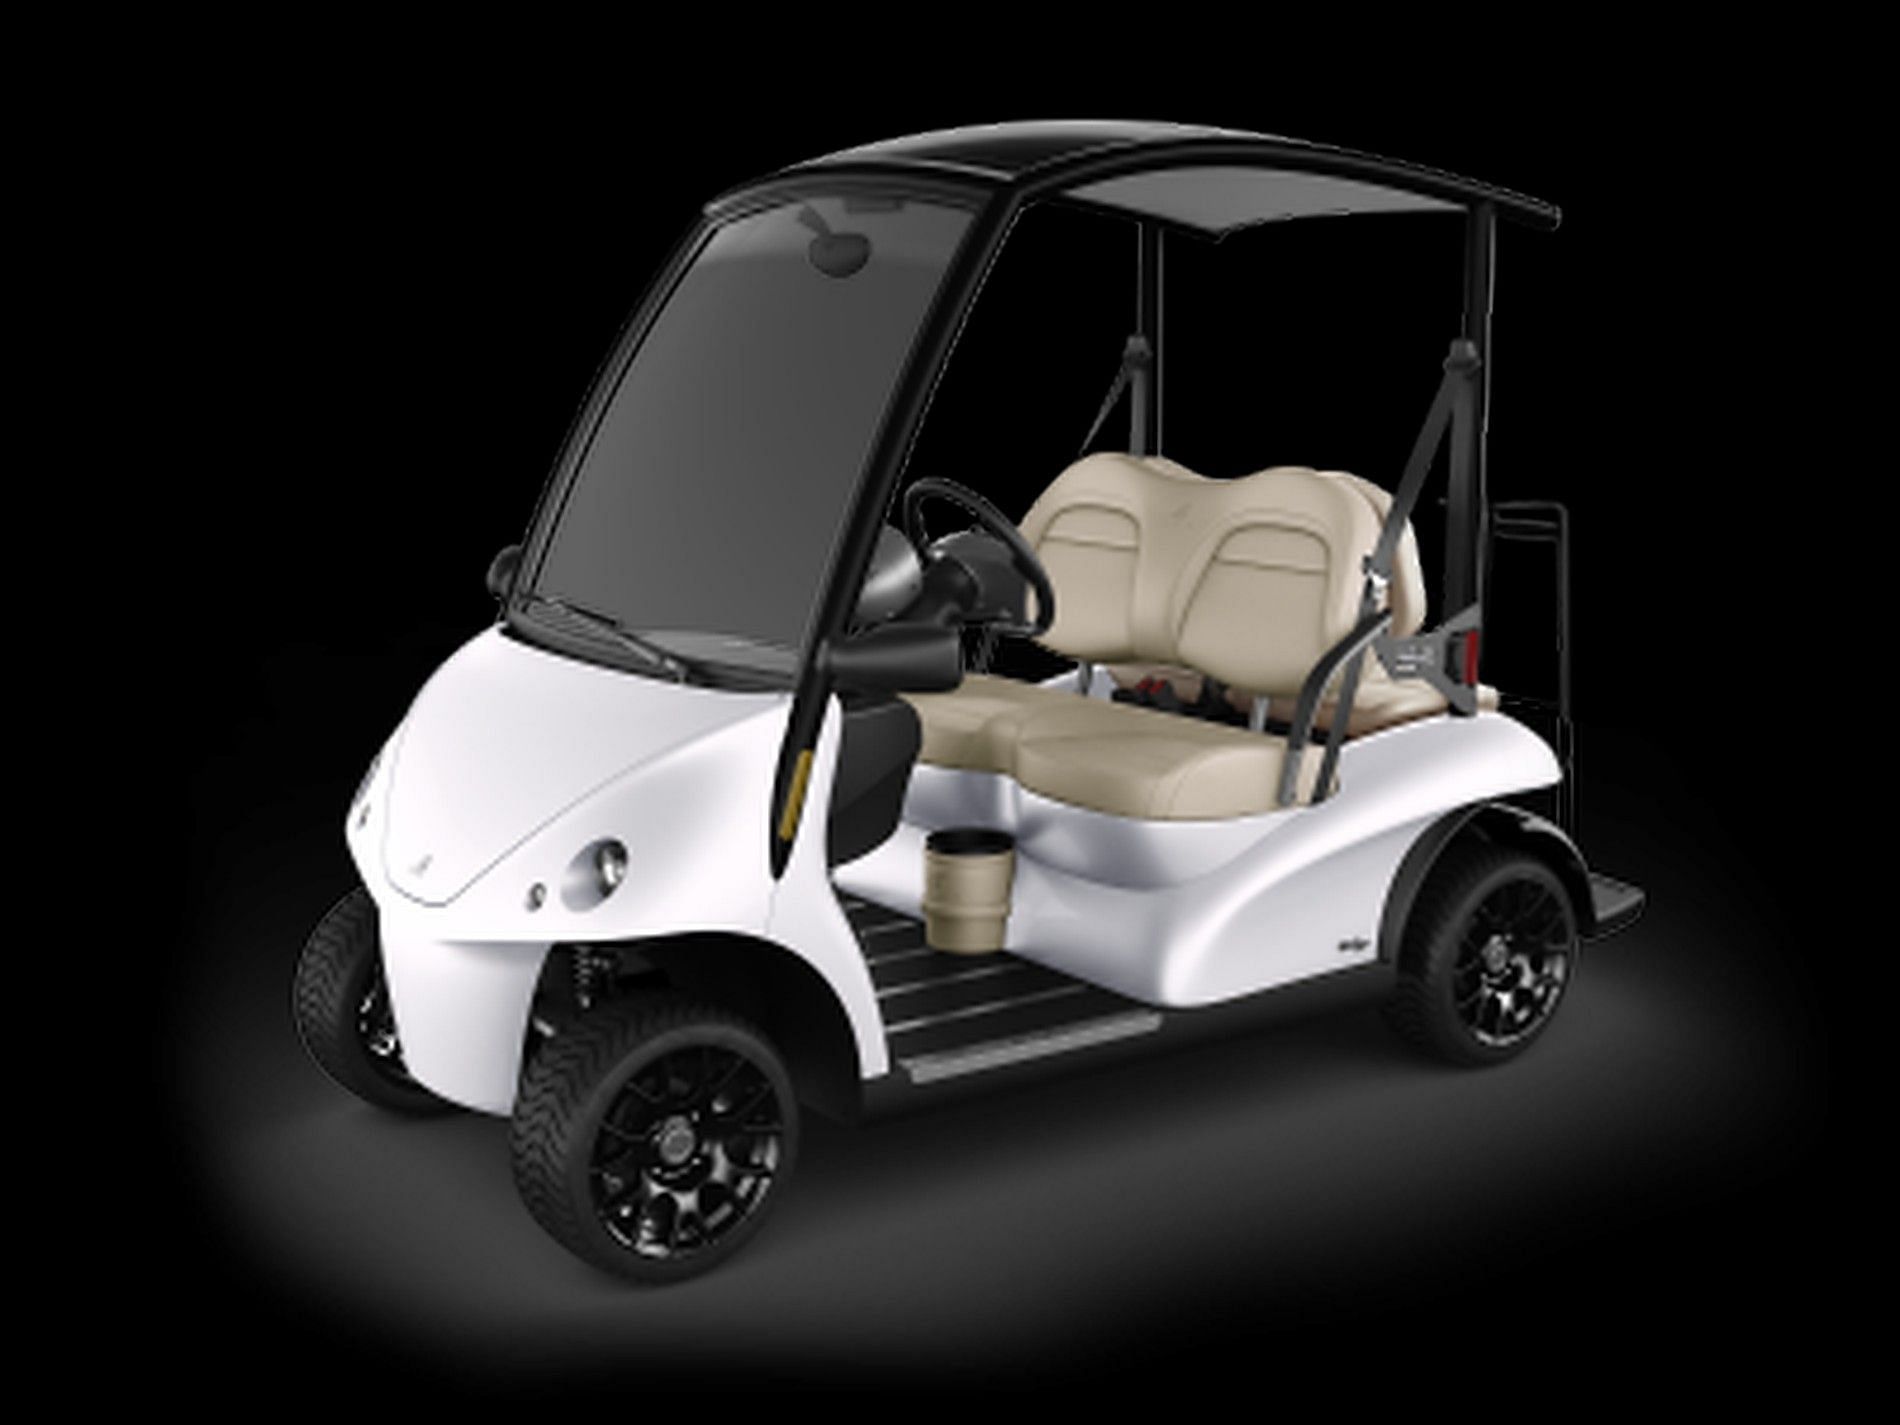 Royal Limo Golf Cart (Image via luxurycarts.com)